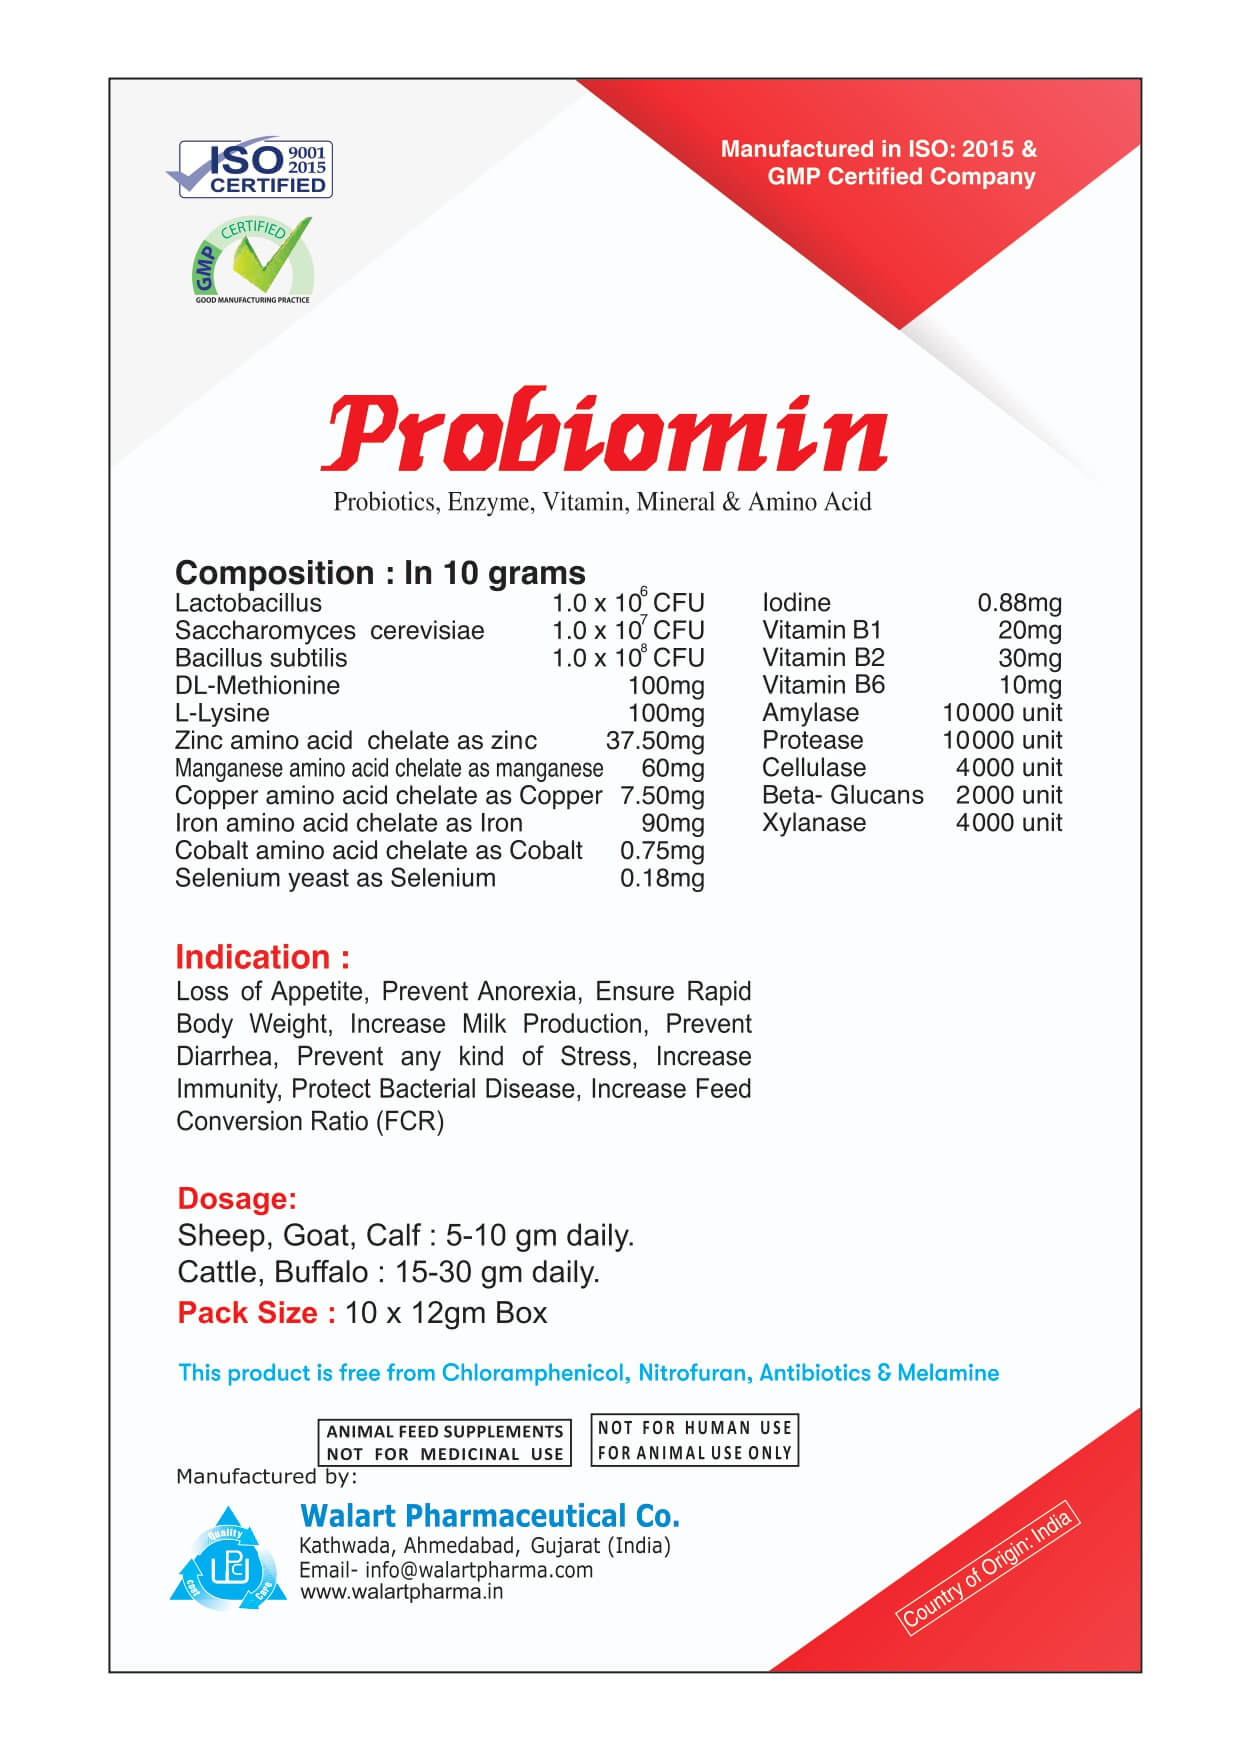 Probiomin 